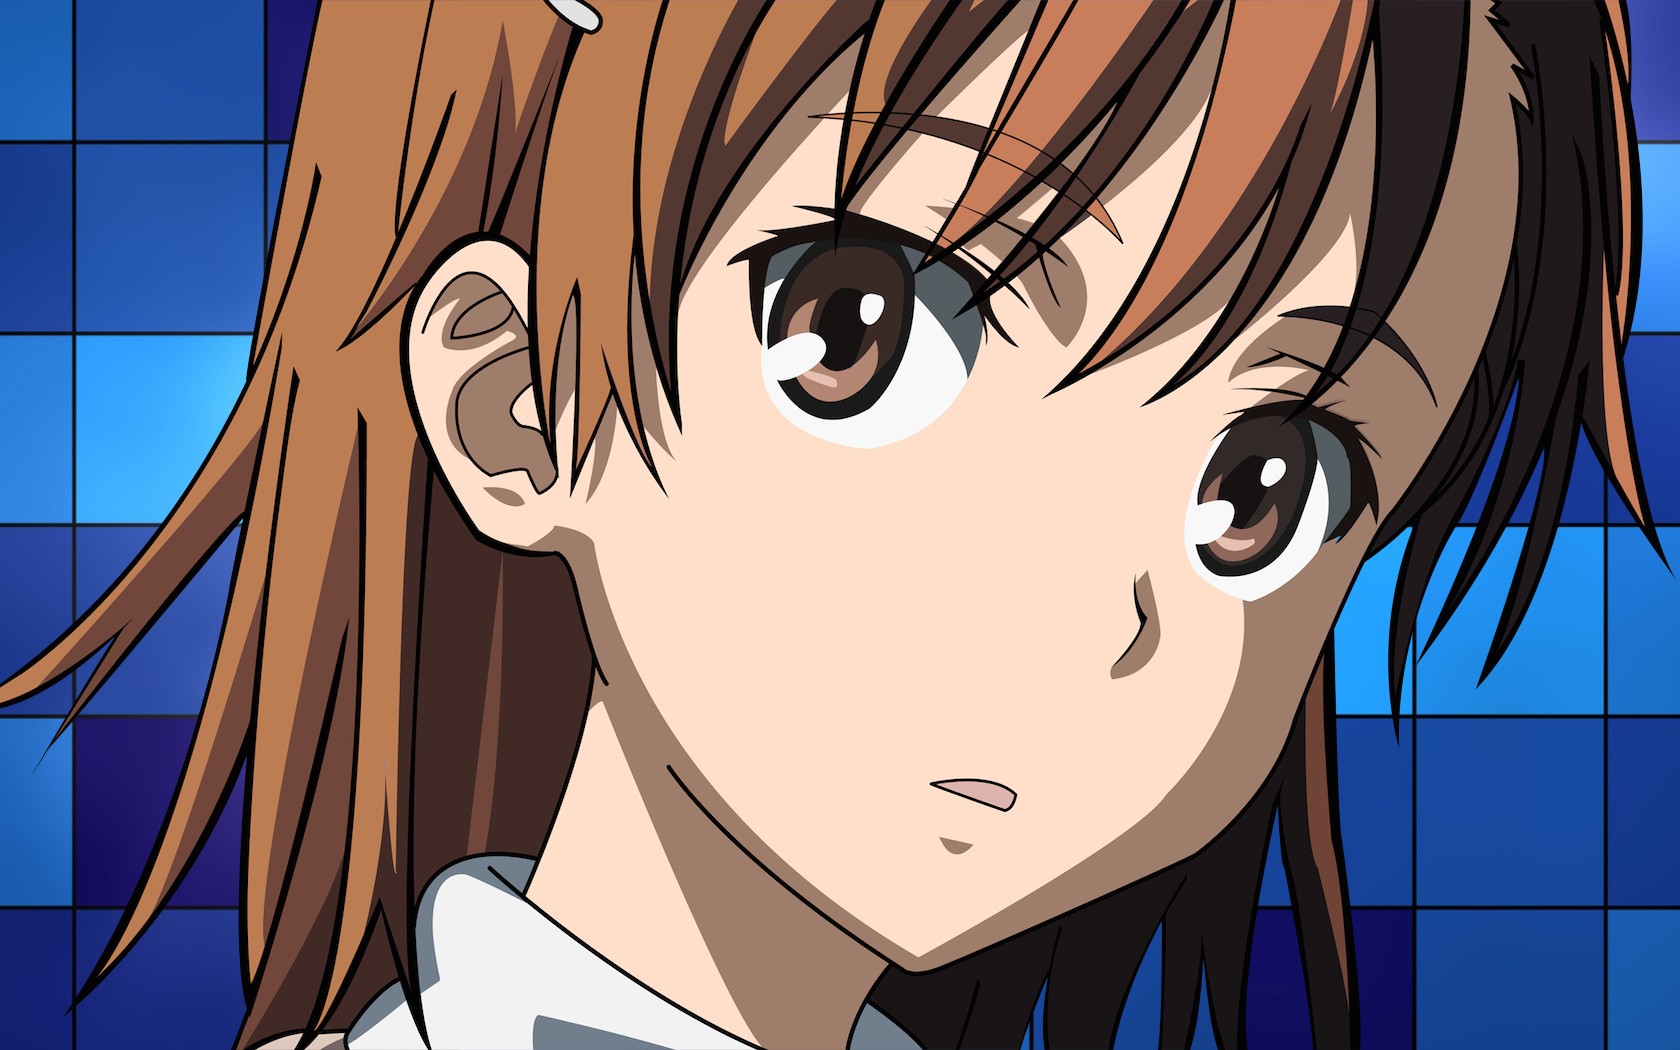 Anime 1680x1050 Misaka Mikoto To Aru Kagaku no Railgun anime brunette brown eyes blue background looking at viewer face closeup